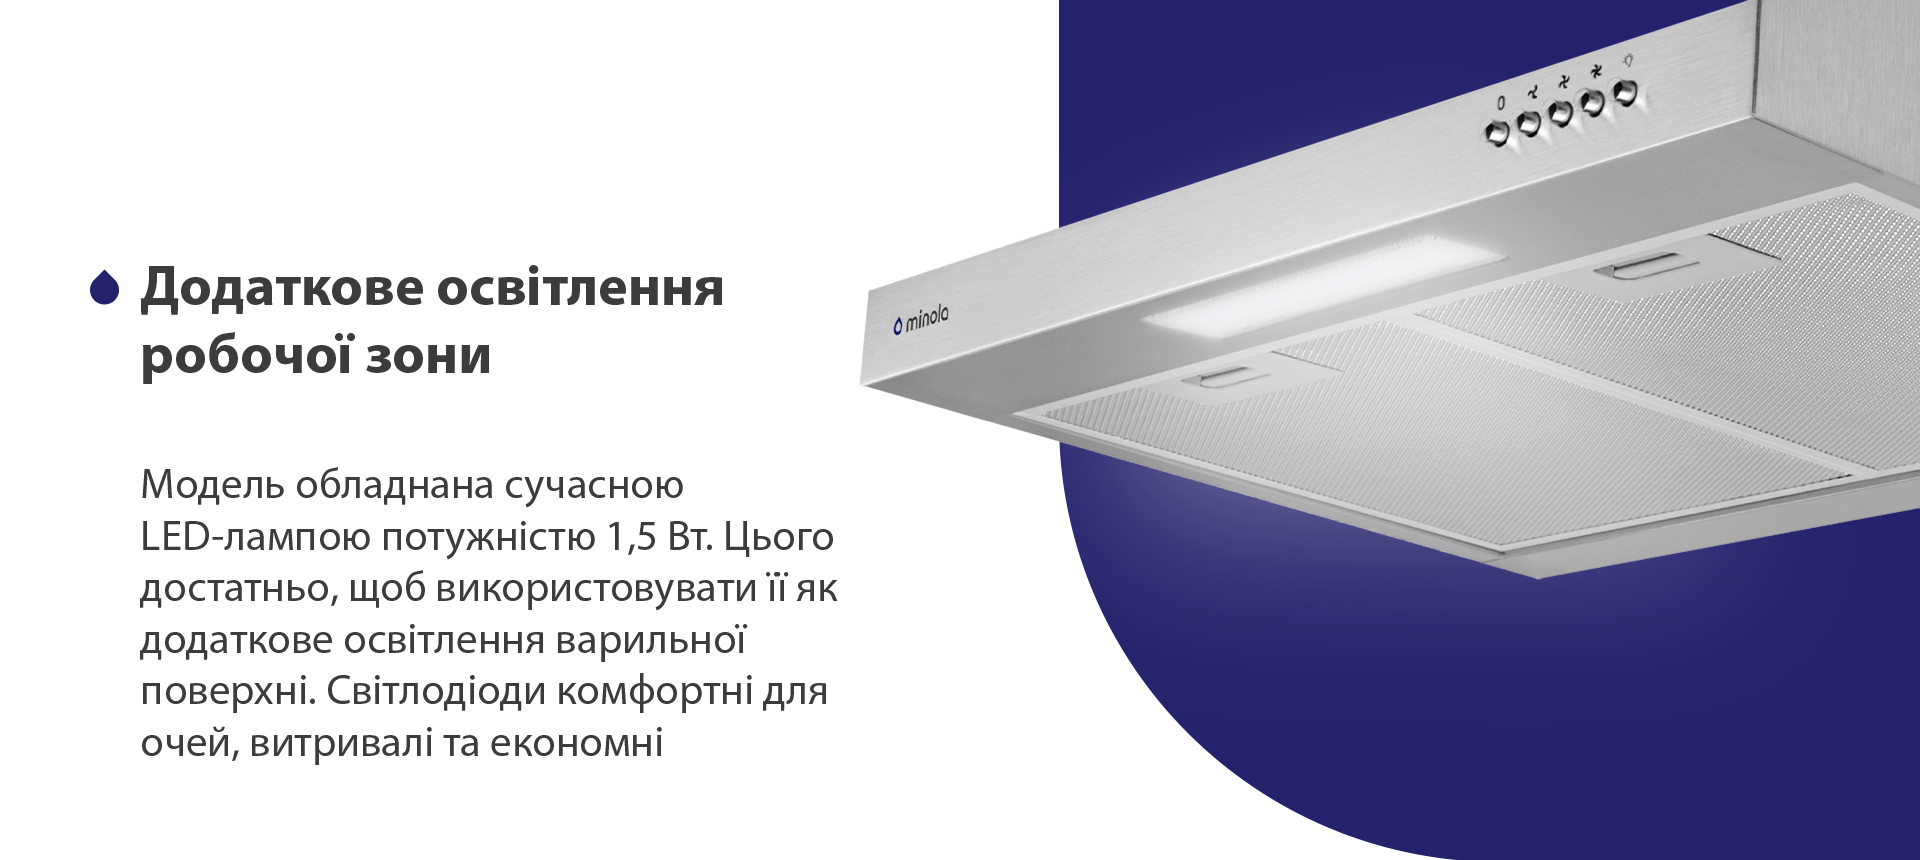 Модель обладнана сучасною LED-лампою потужністю 1,5 Вт. Цього достатньо, щоб використовувати її як додаткове освітлення варильної поверхні. Світлодіоди комфортні для очей, витривалі та економні